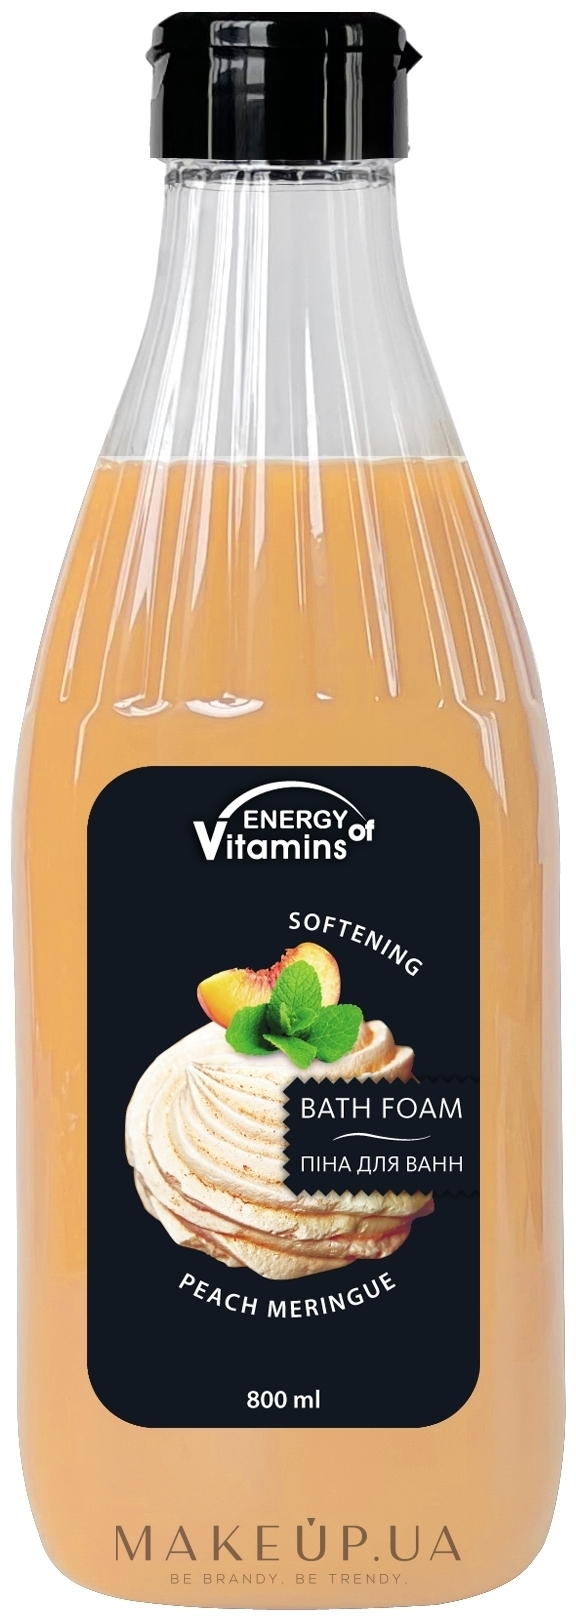 Персиковая пена-шейк для ванн - Energy of Vitamins — фото 800ml